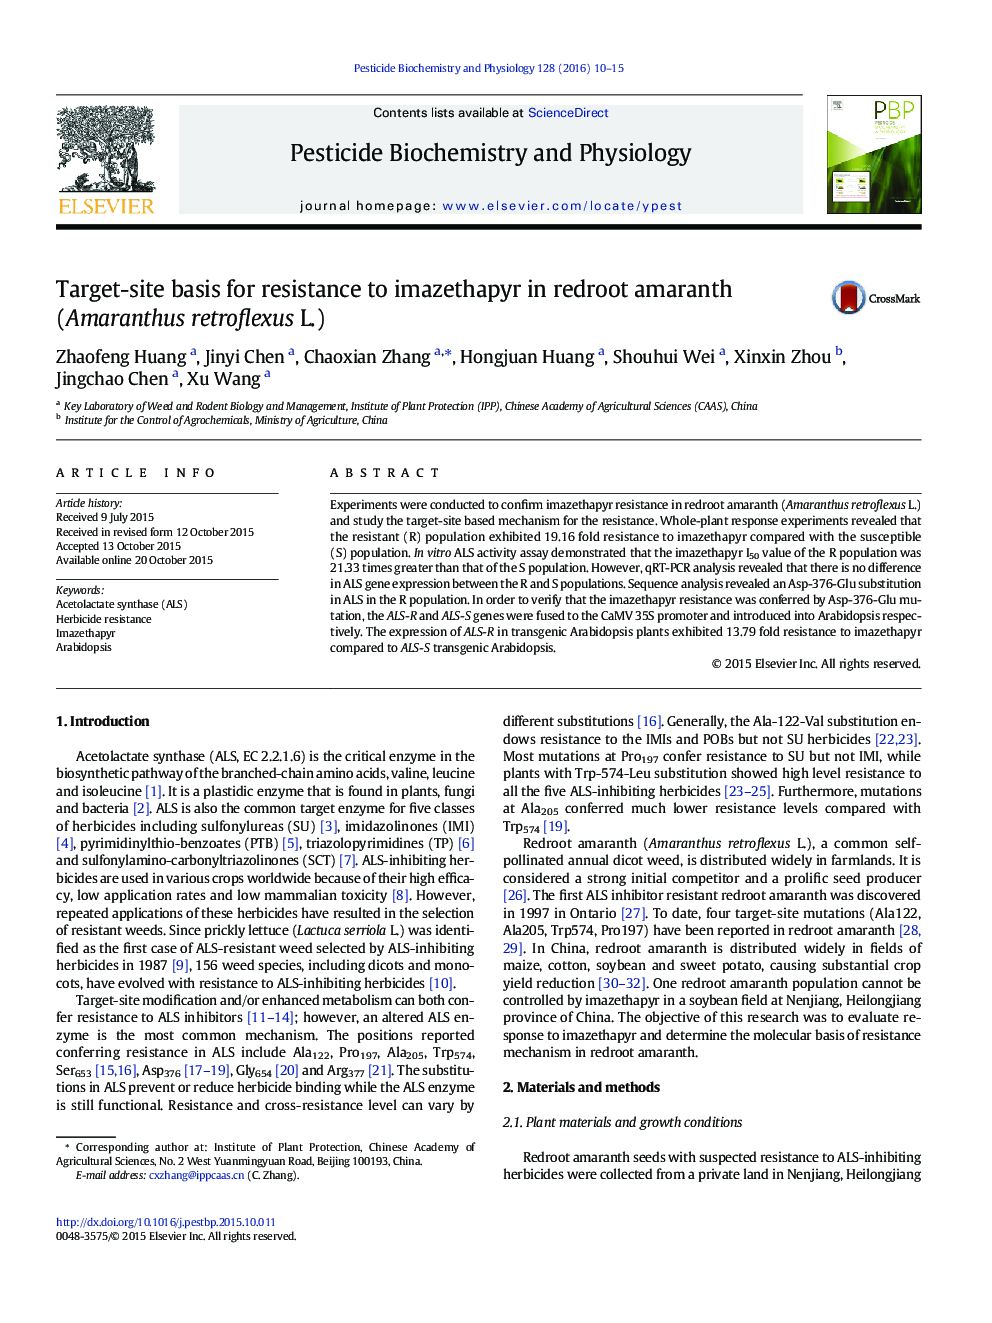 پایه های سایت هدف برای مقاومت در برابر imazethapyr در خروس گل تاج خروس (Amaranthus retroflexus L.)